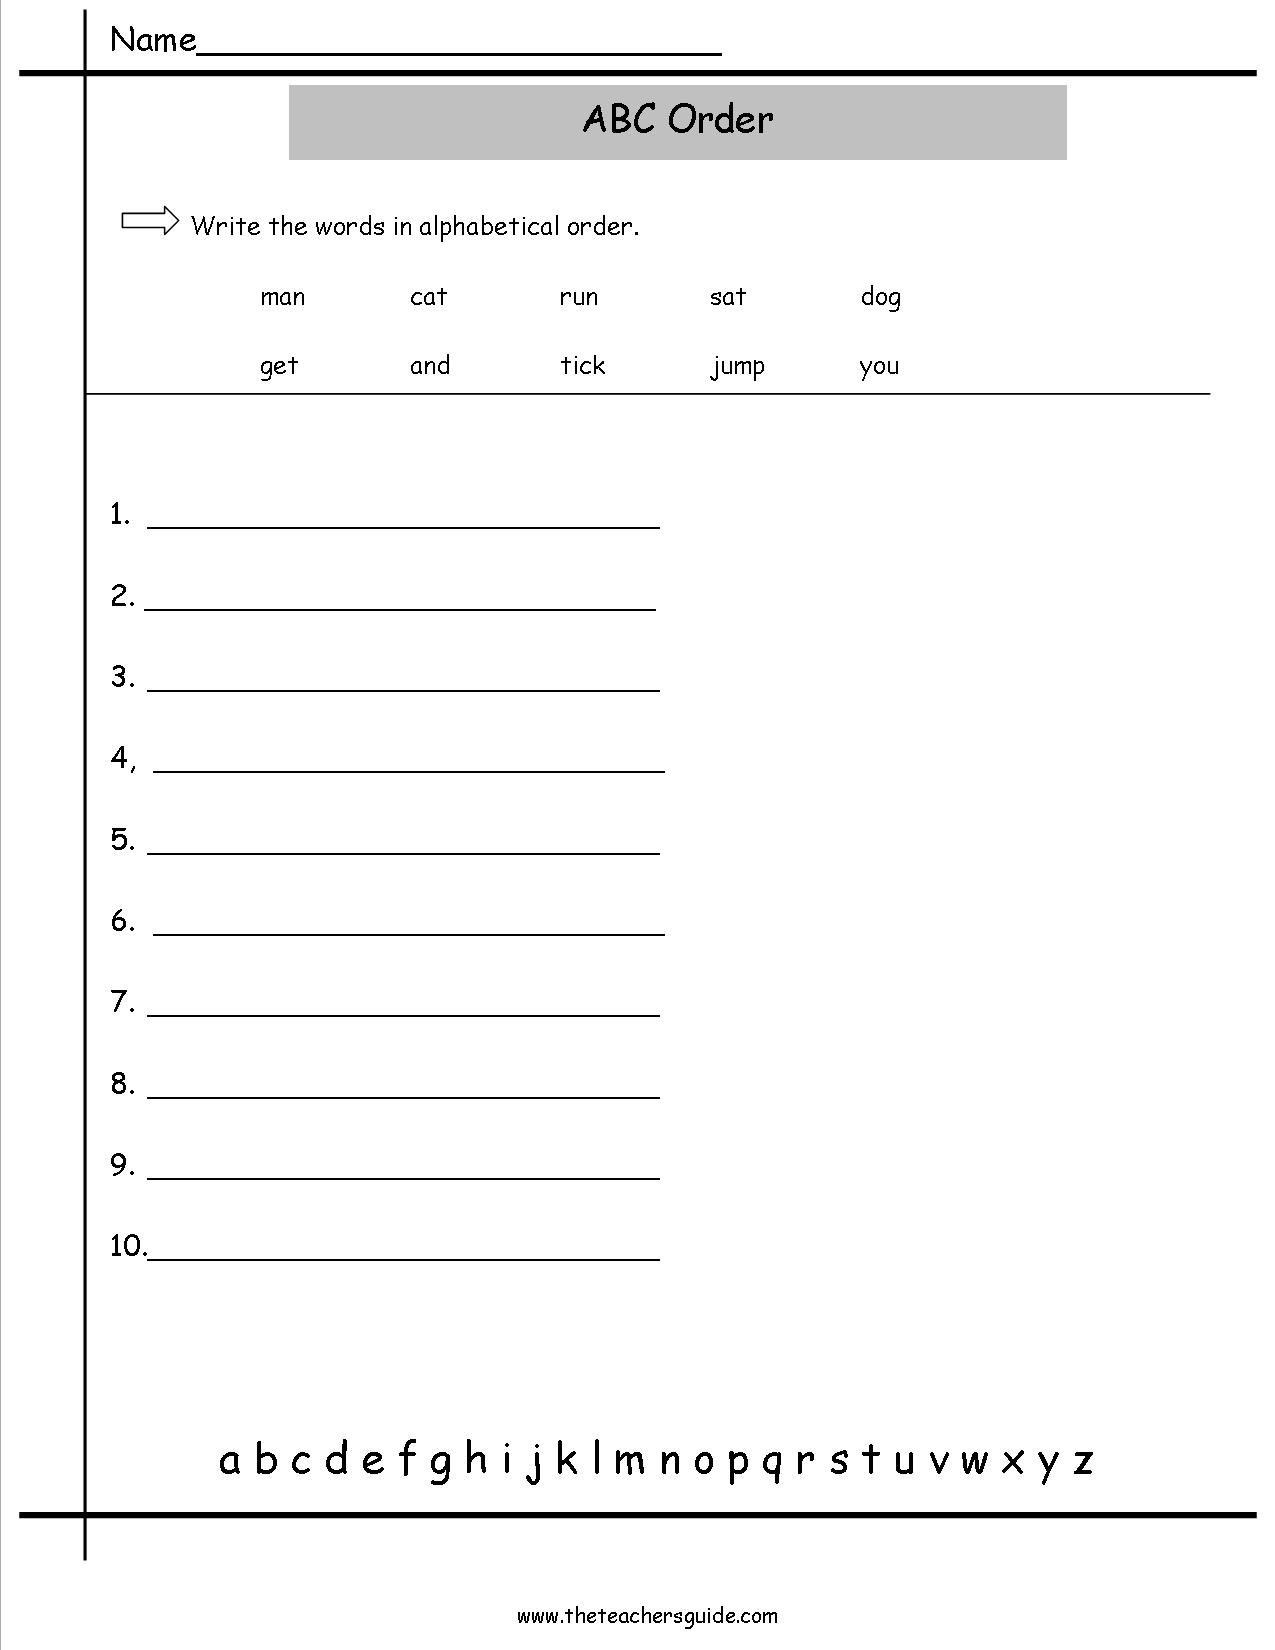 11 ABC Order Worksheets For Kindergarten Worksheeto